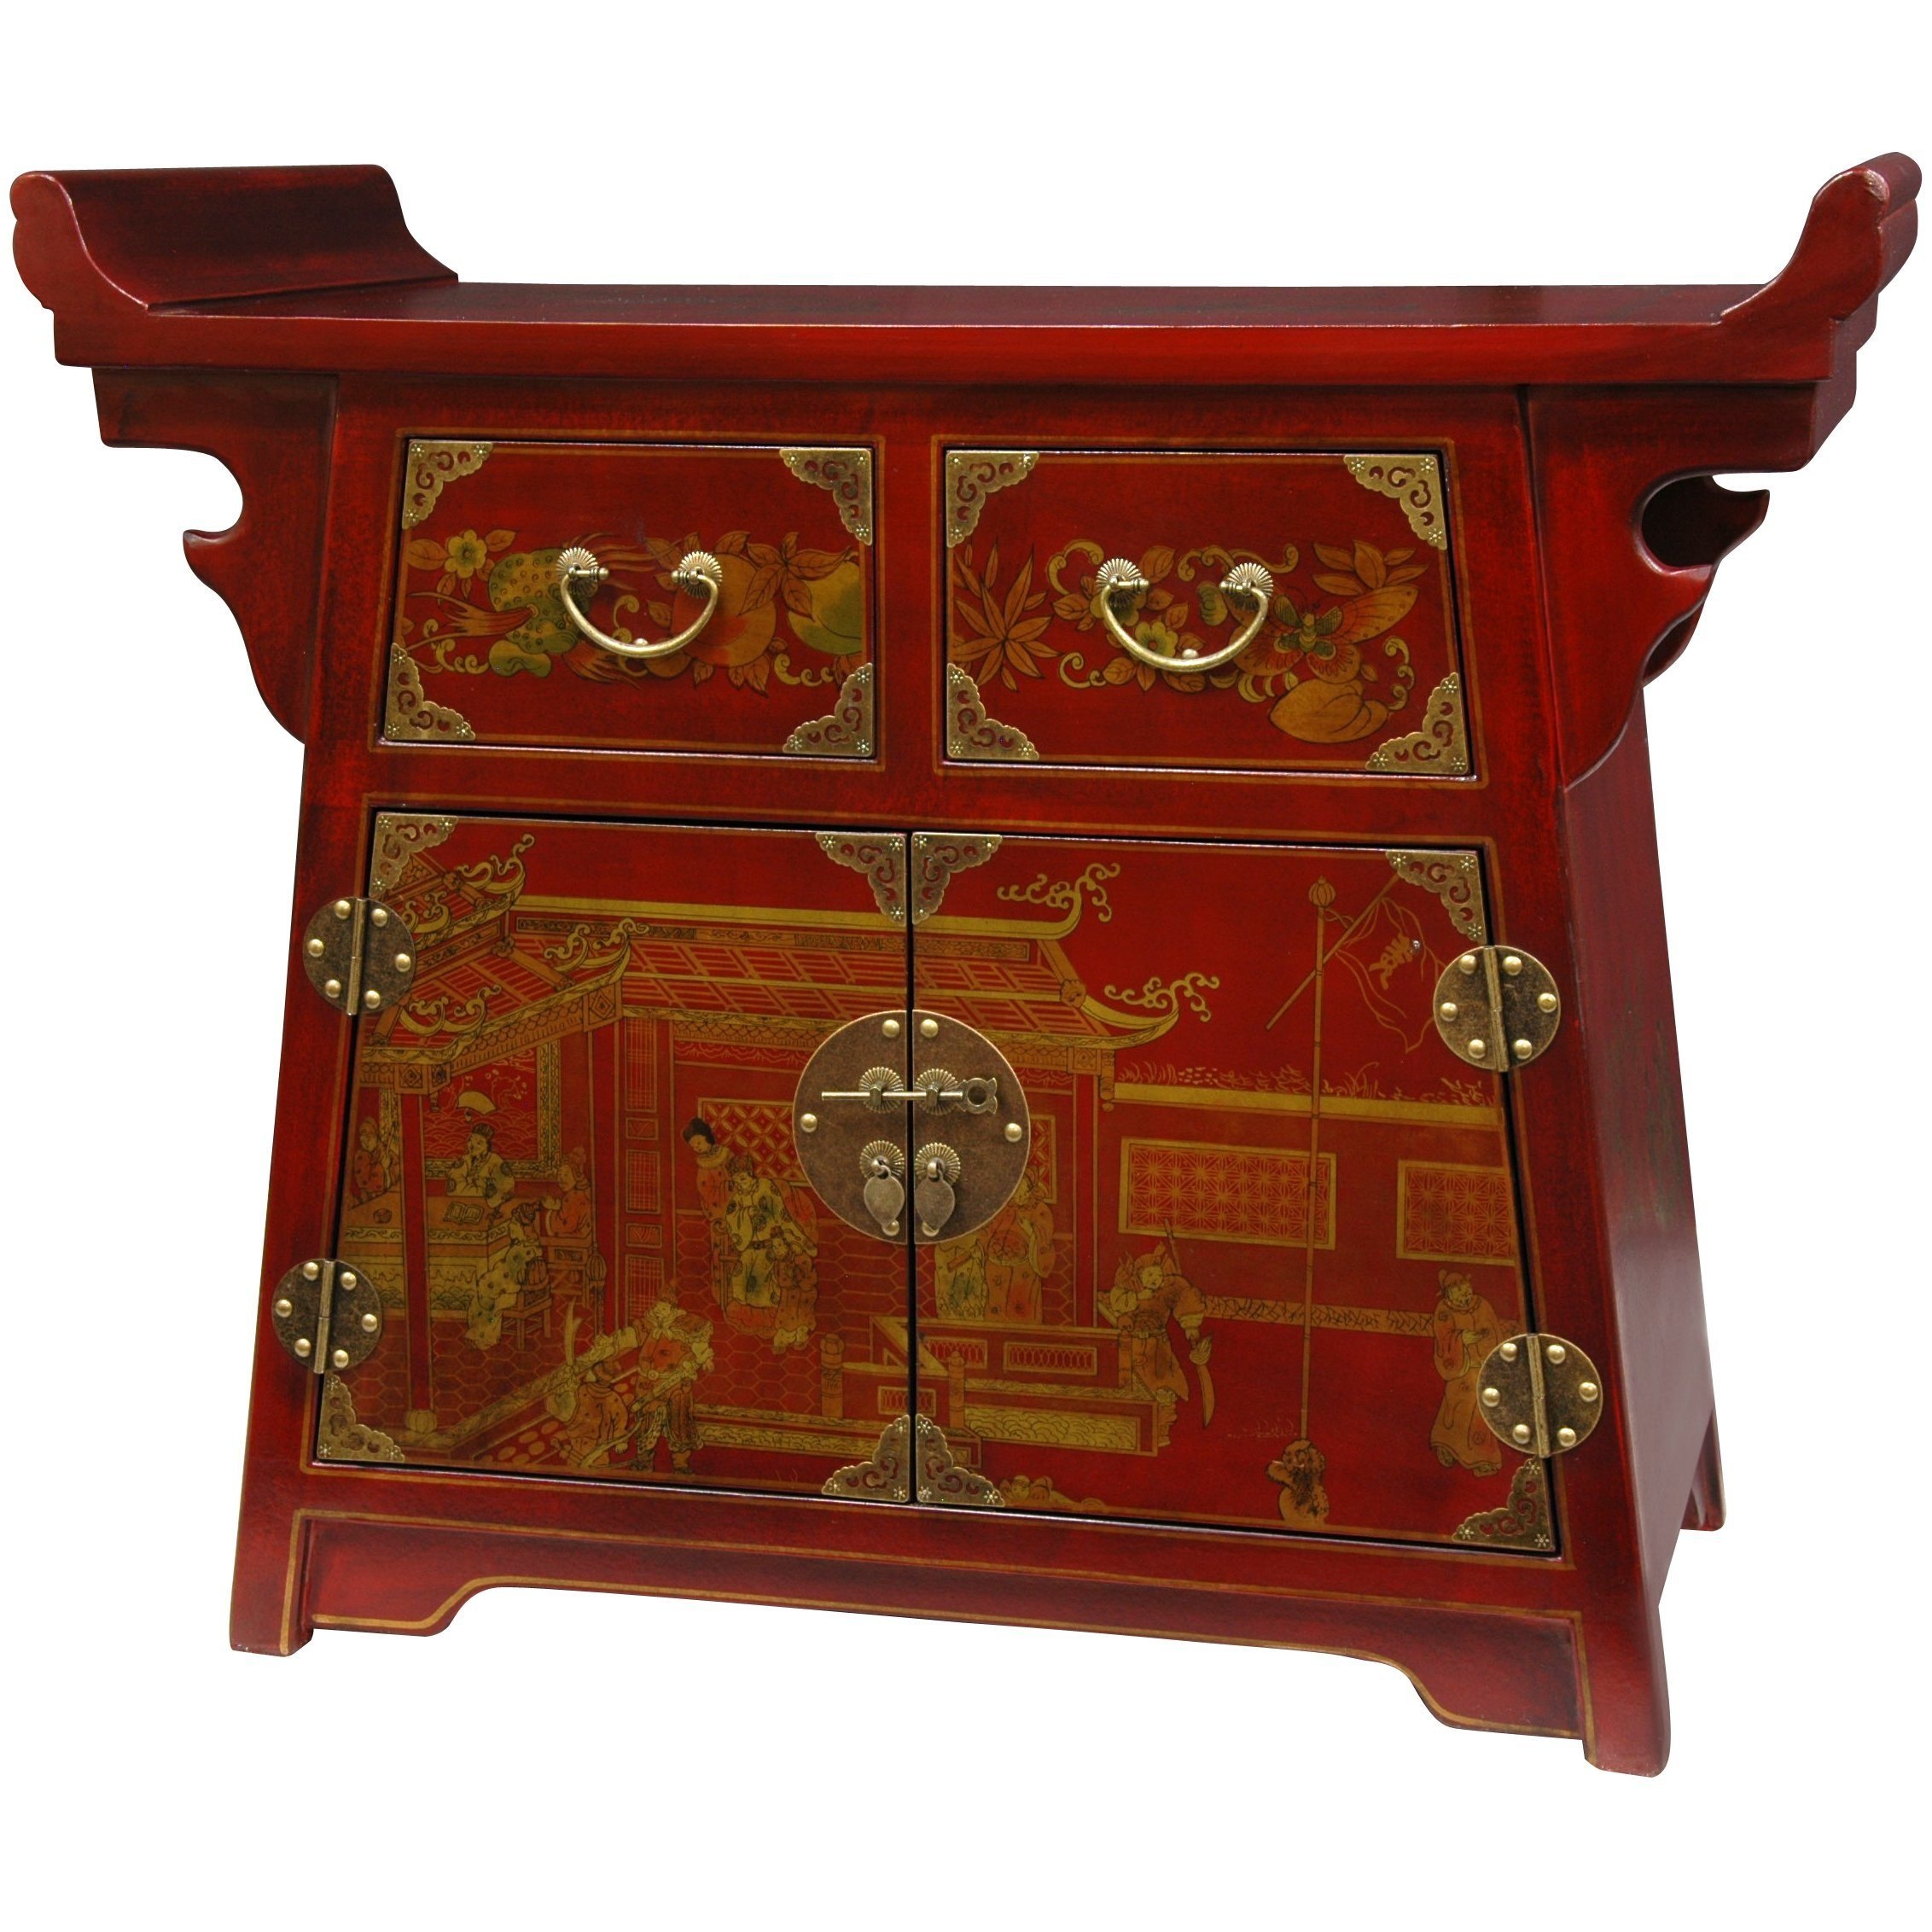 Китайская мебель купить. Традиционная китайская мебель. Мебель в китайском стиле. Антикварная мебель в китайском стиле. Древняя китайская мебель.